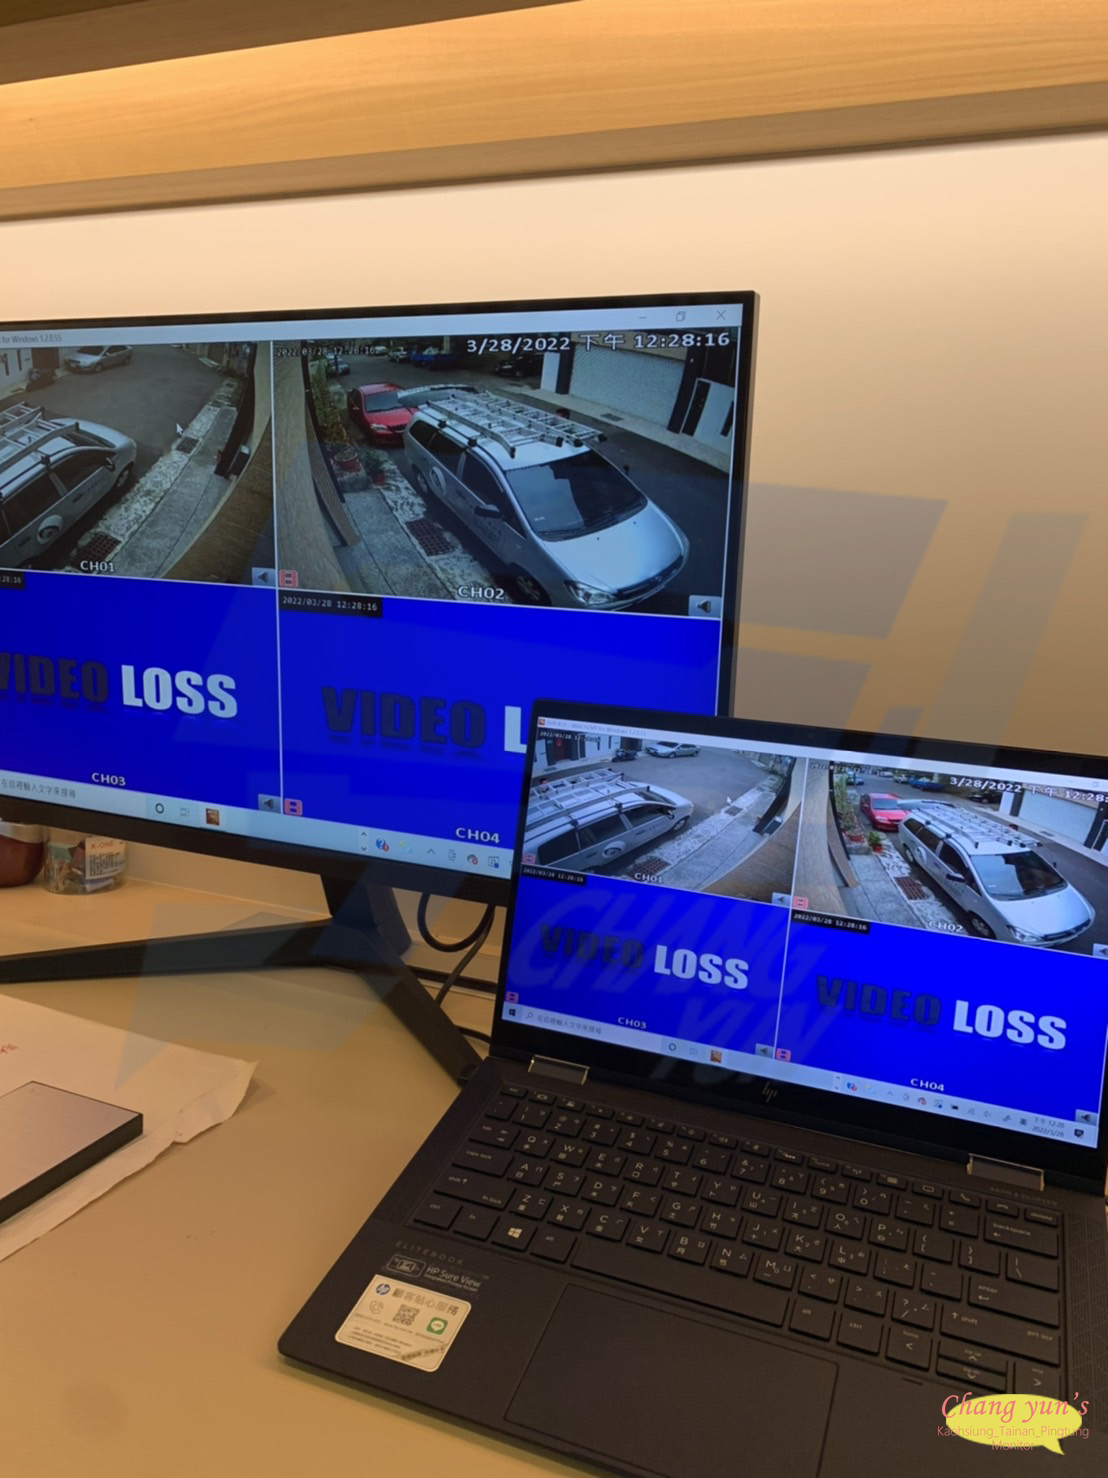 高雄市前鎮區監視器安裝案例 監視系統推薦安裝廠商